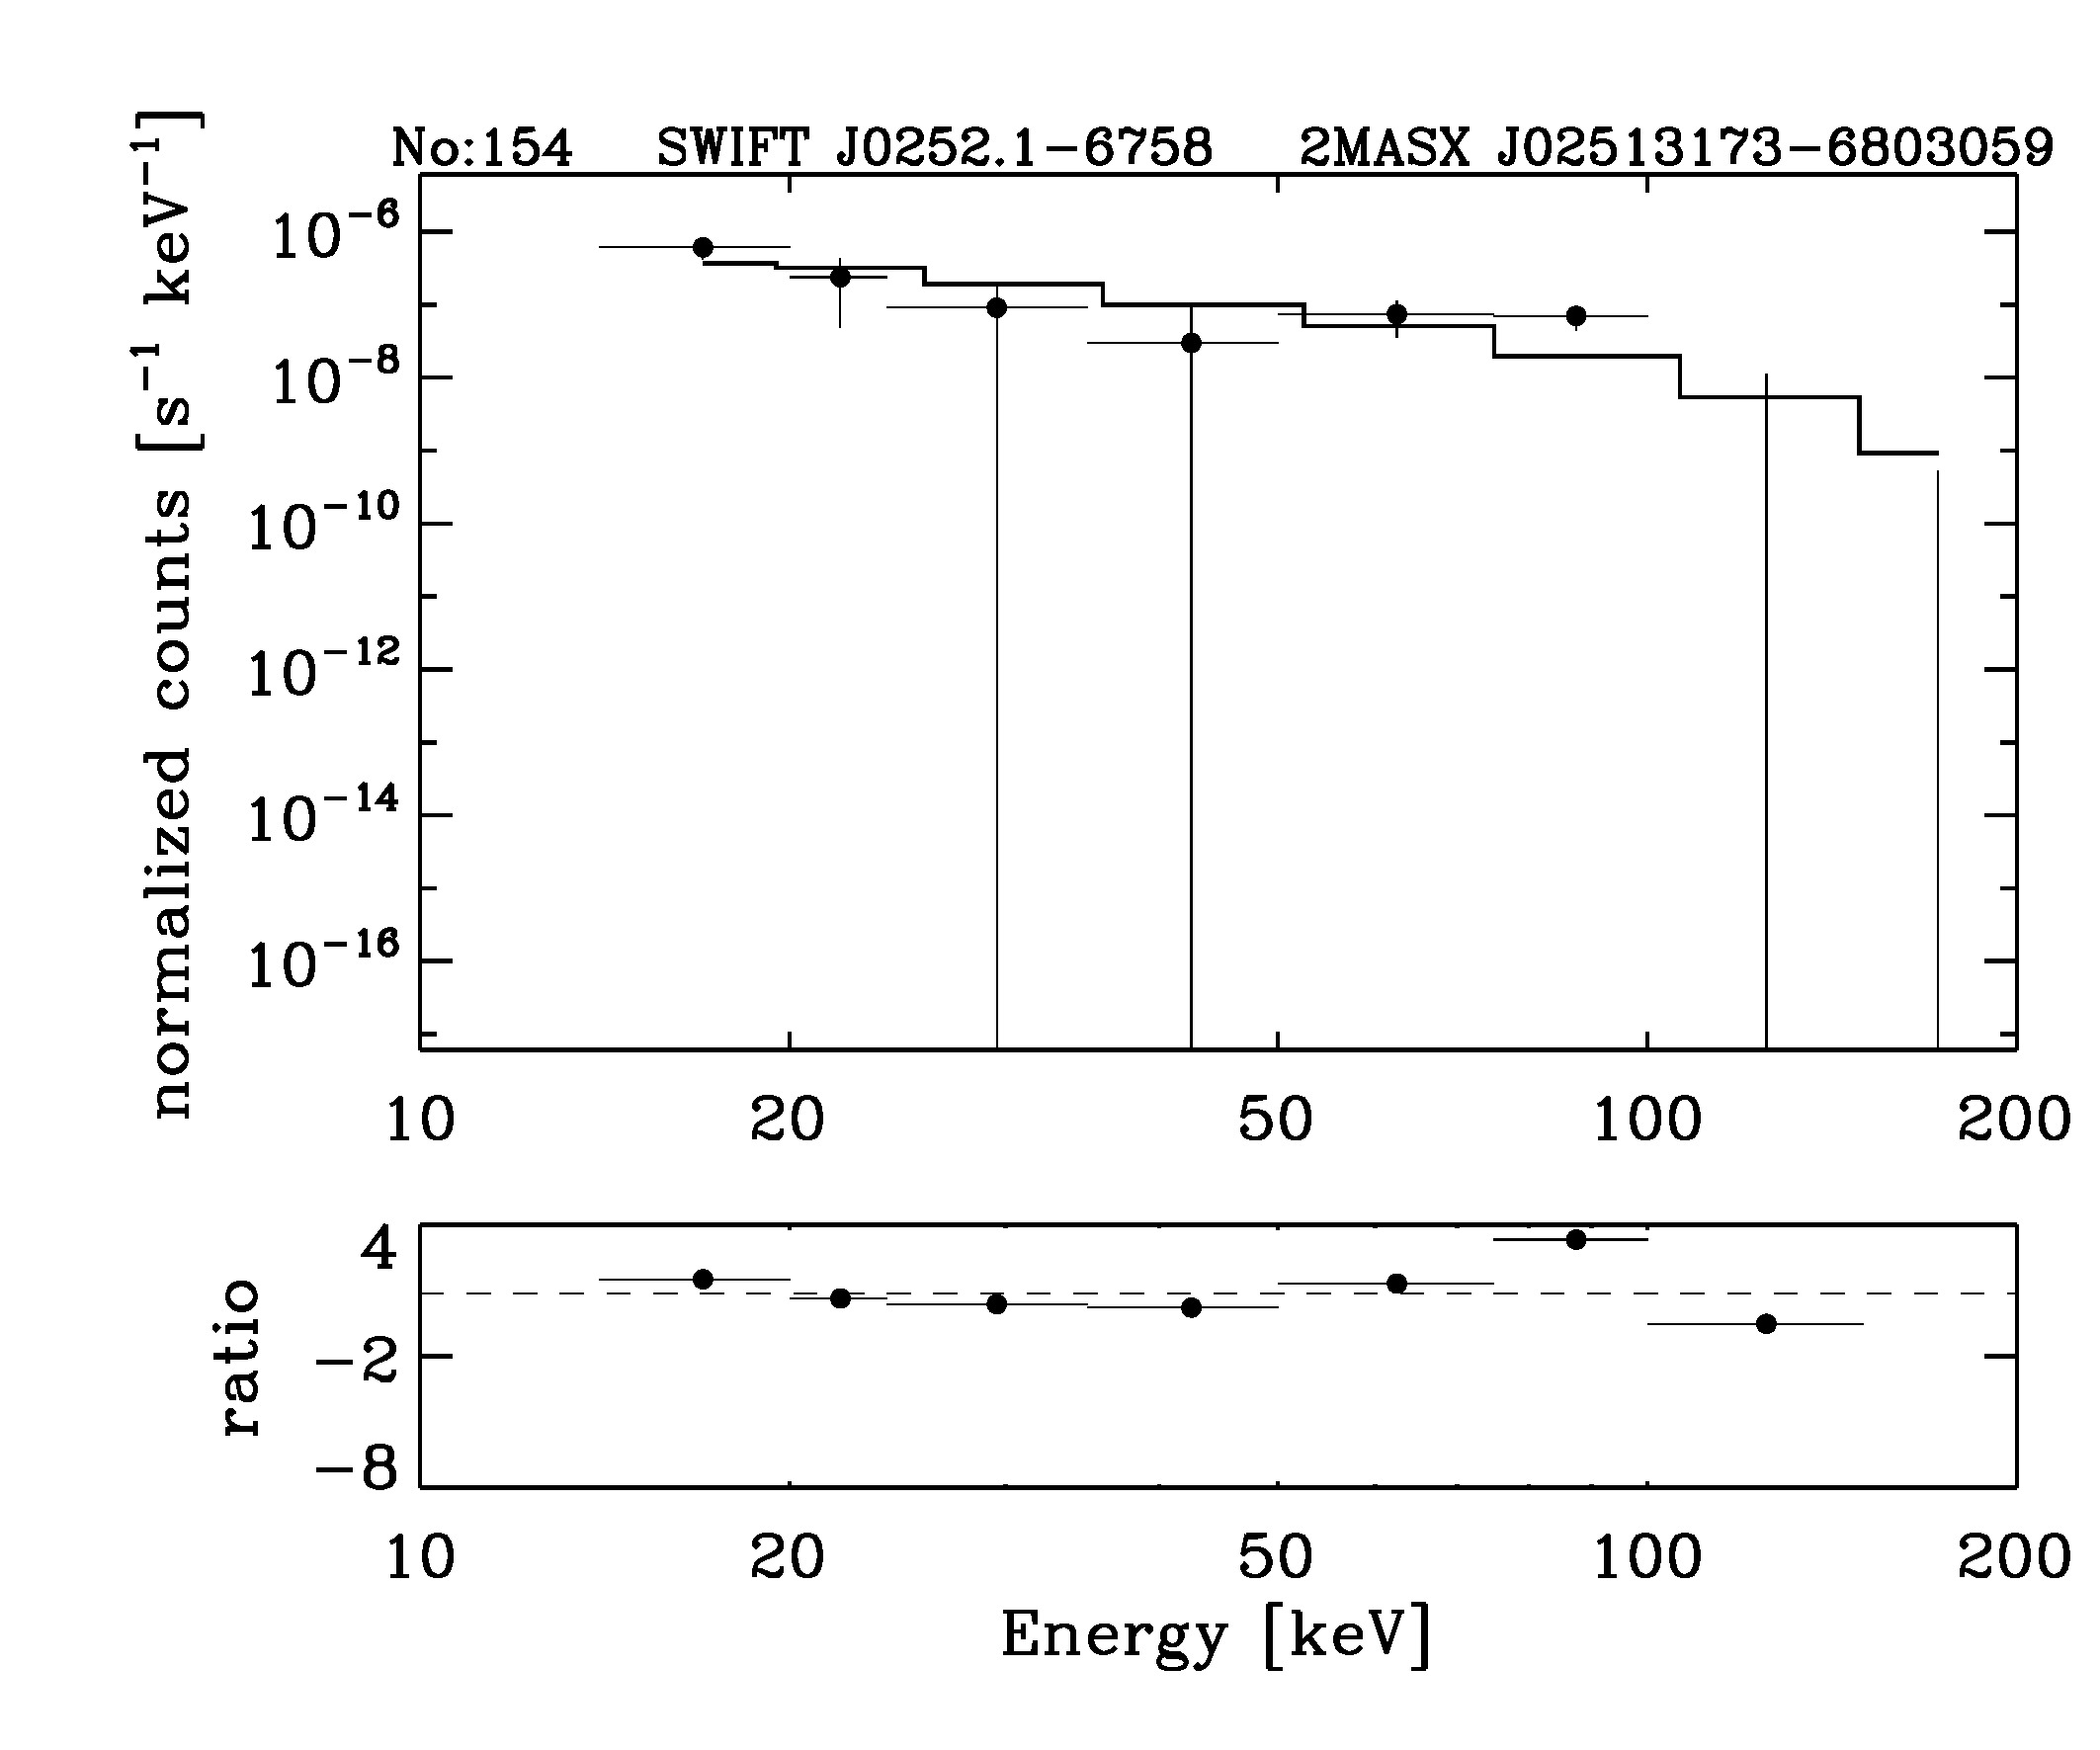 BAT Spectrum for SWIFT J0252.1-6758